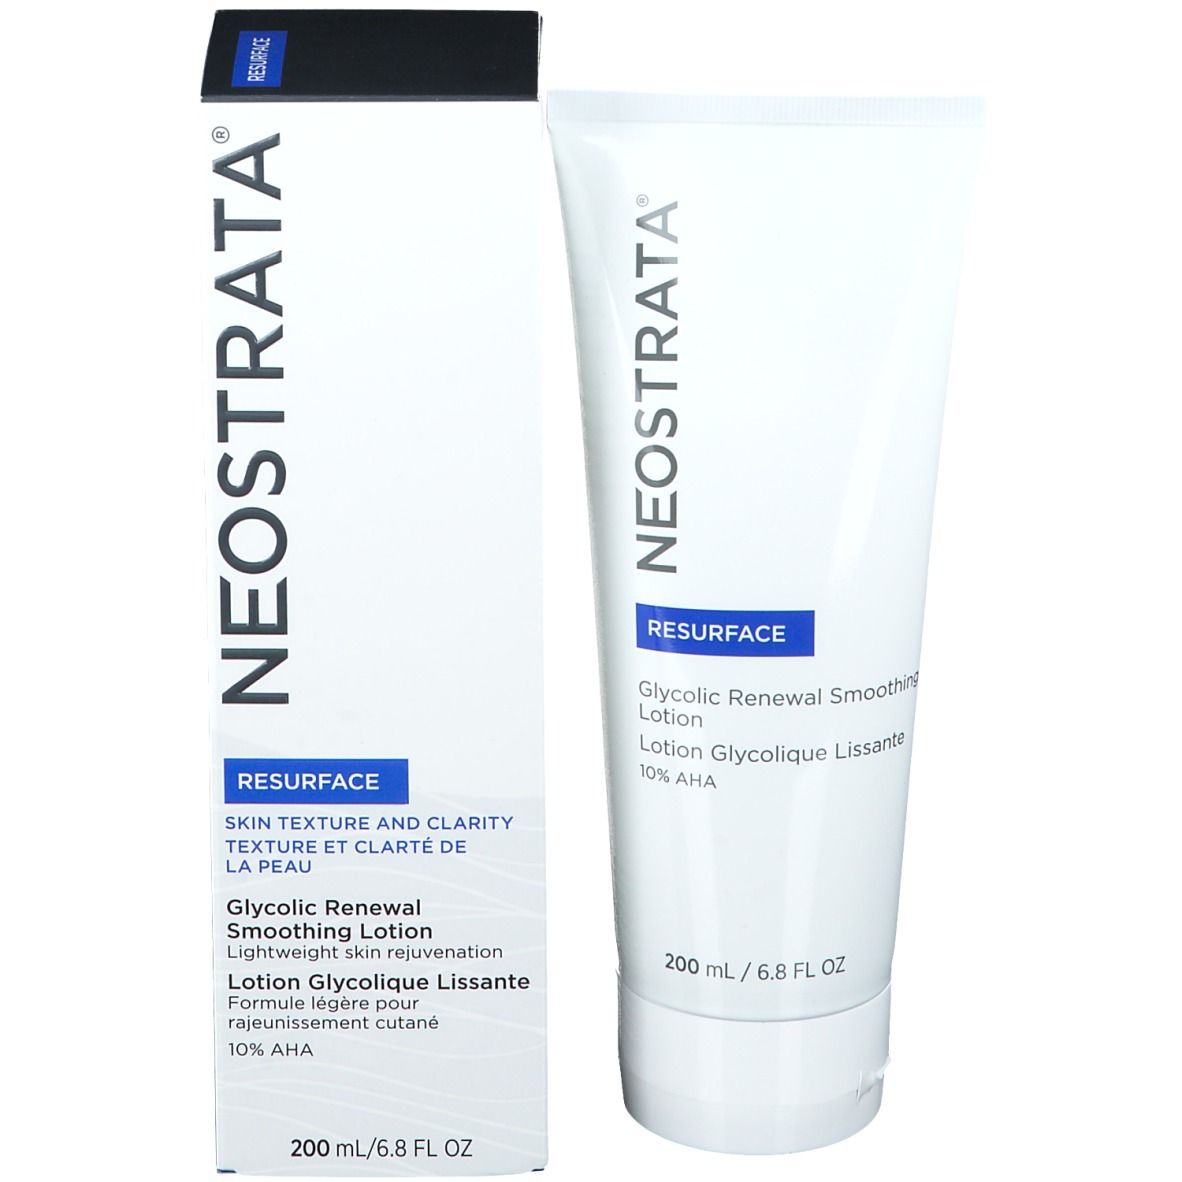 NeoStrata® Resurface Glycolic Renewal Smoothing Lotion 10 AHA